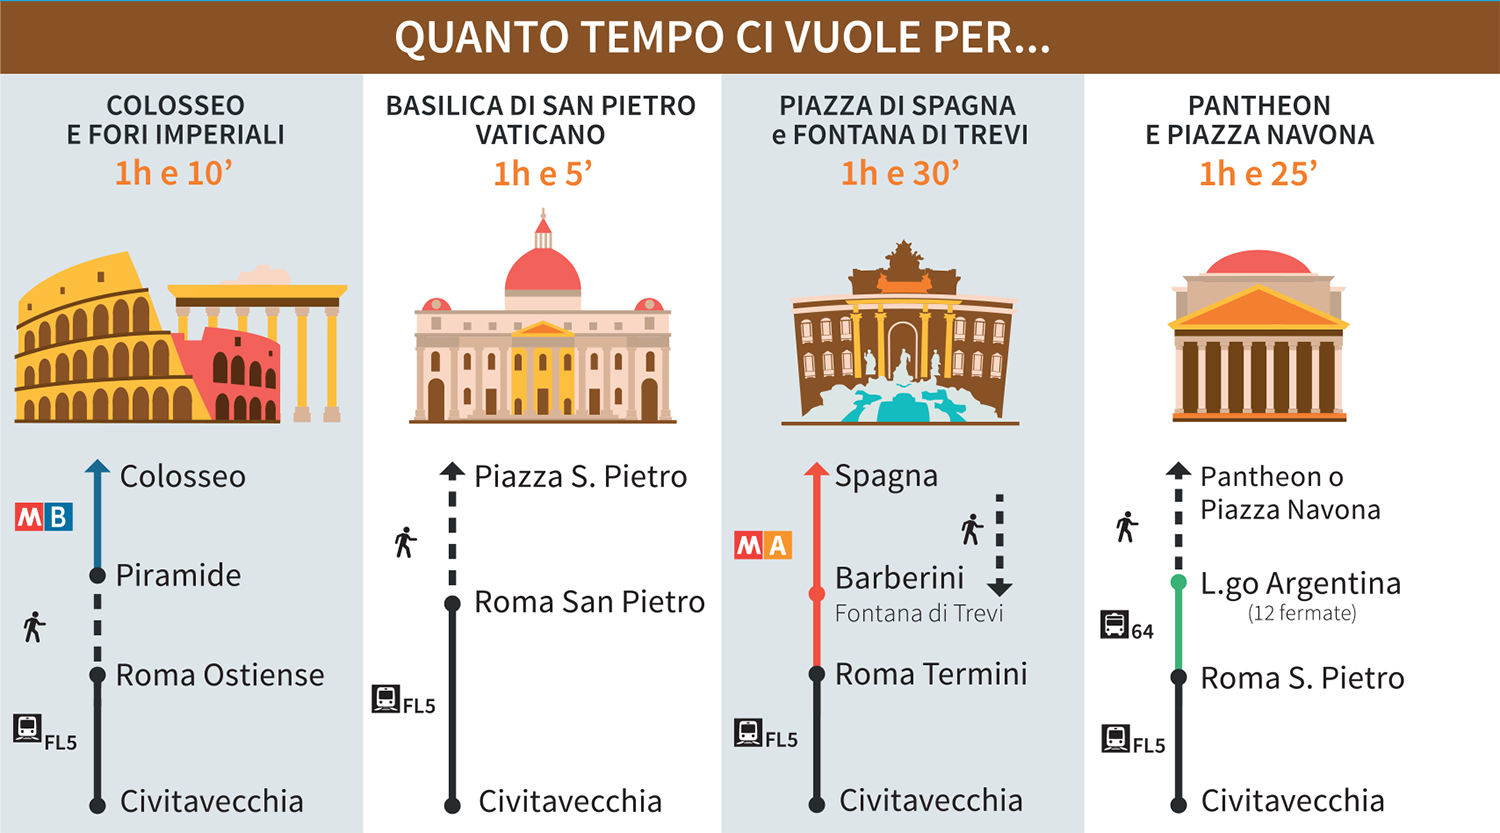 Guida del Crocierista: quanto tempo ci vuole per Colosseo, Fori Imperiali, Basilica San Pietro, Piazza di Spagna, Fontana di Trevi, Pantheon e Piazza Navona